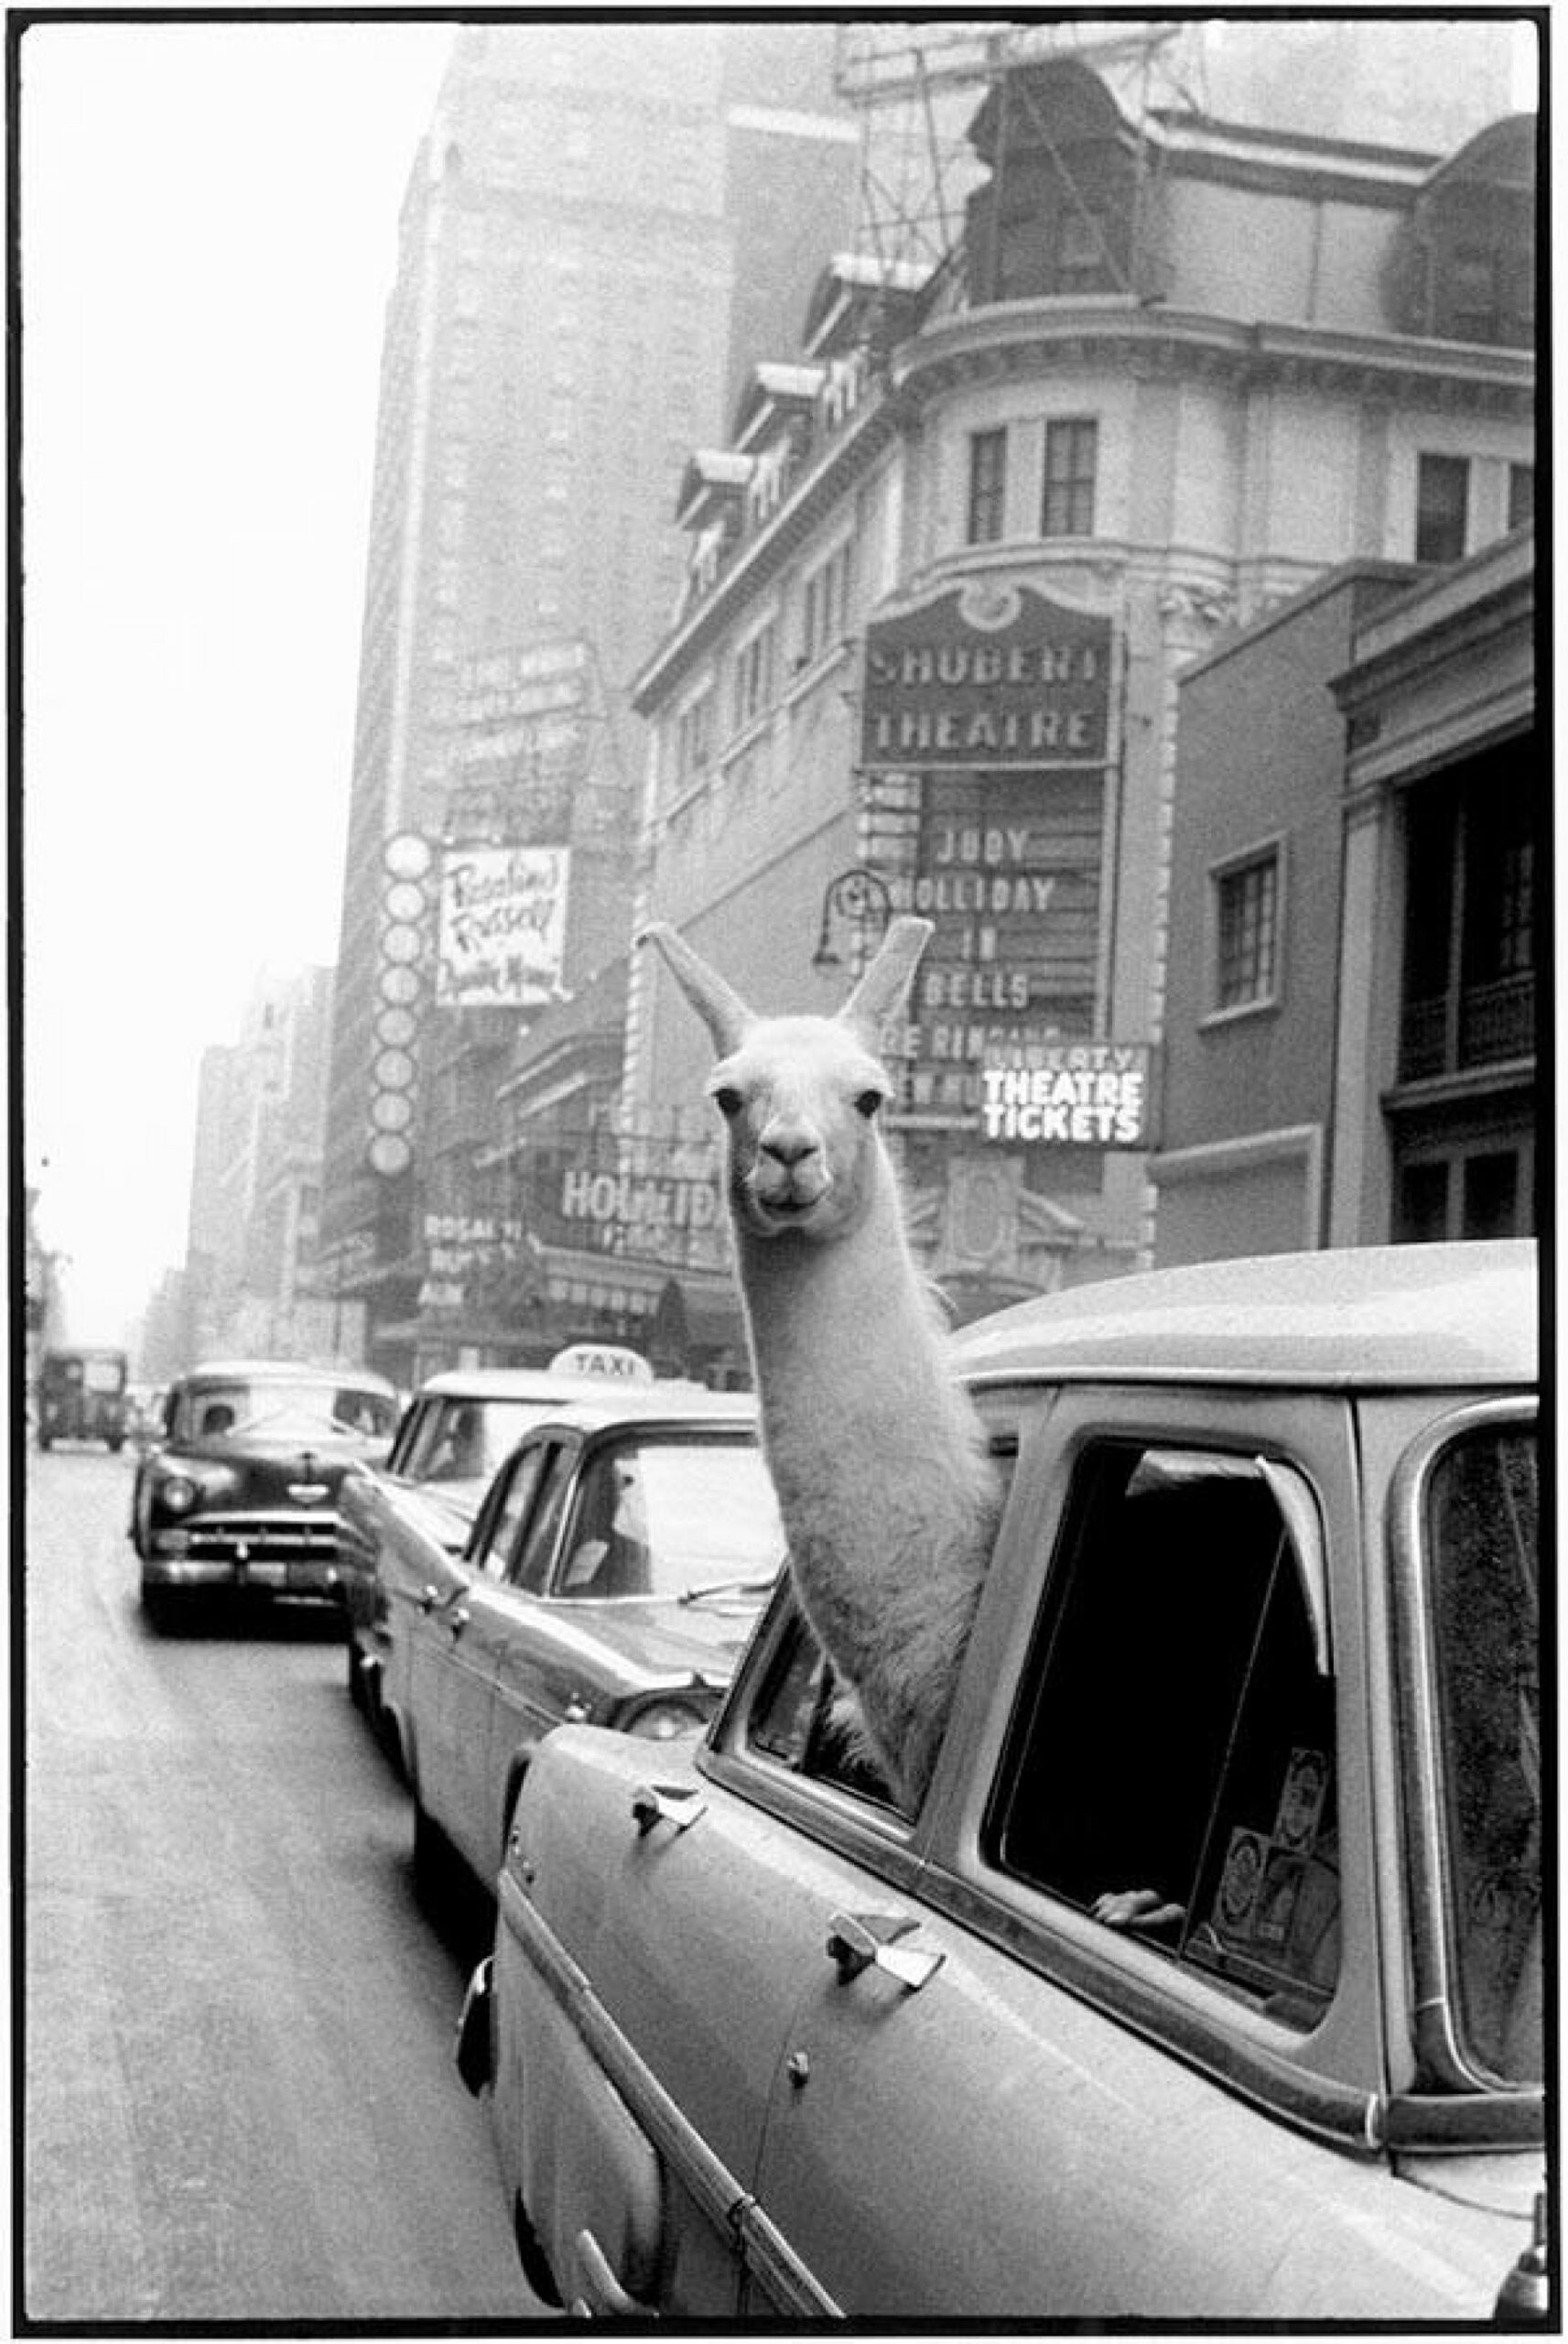 Adaptarnos al habitar José del Carmen Palacios Aguilar A Llama in Times Square NY 1957_Magnum fotos